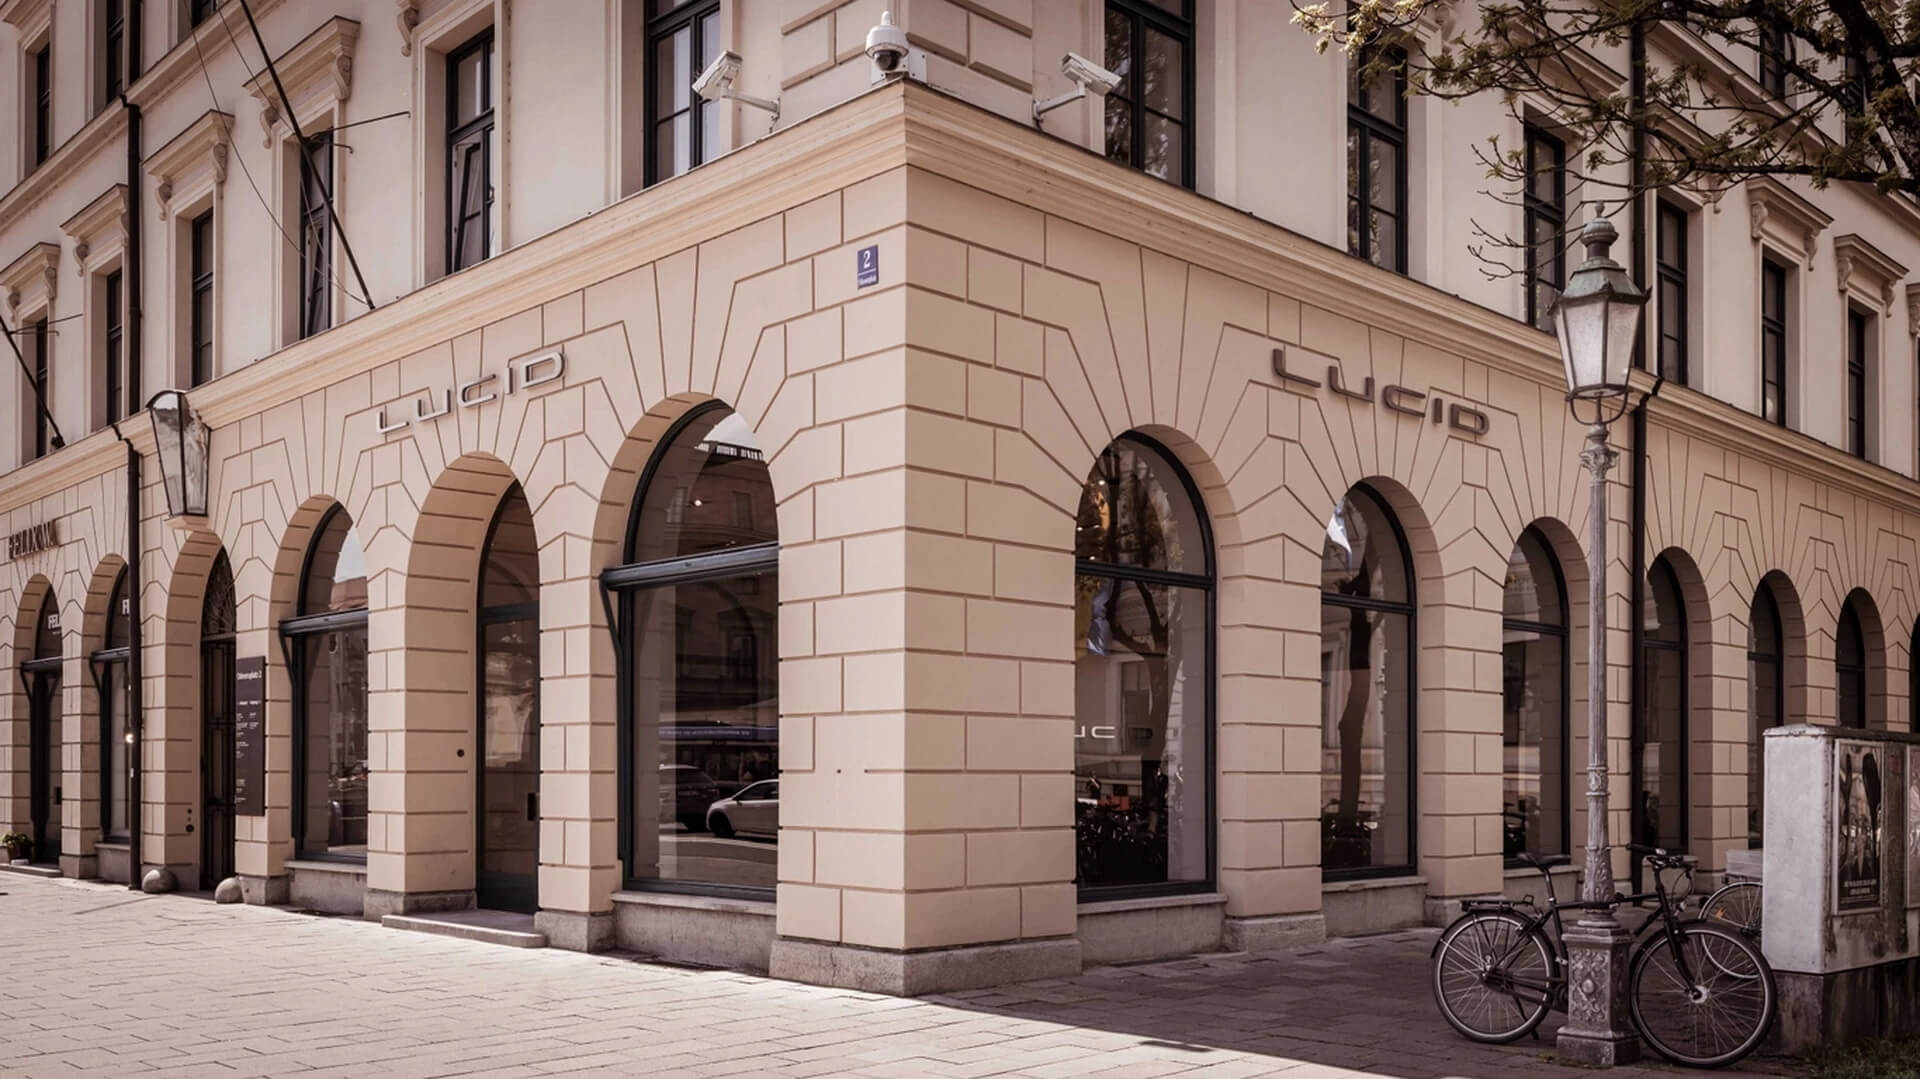 Перший роздрібний магазин Lucid у Європі на площі Одеонсплац у Мюнхені, Німеччина